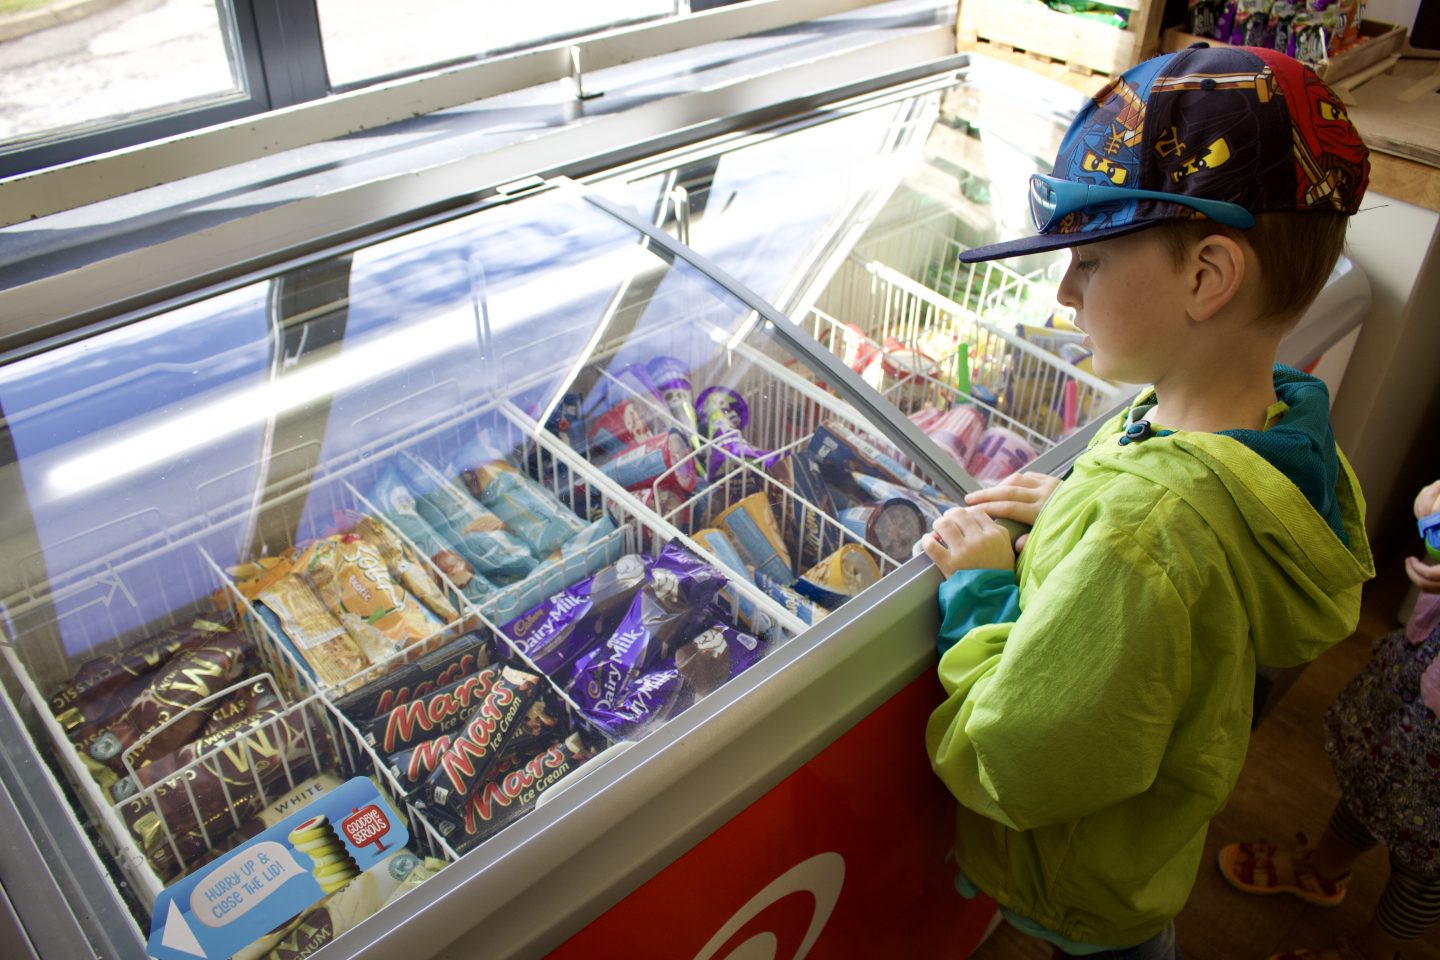 Little boy choosing an ice cream from a freezer